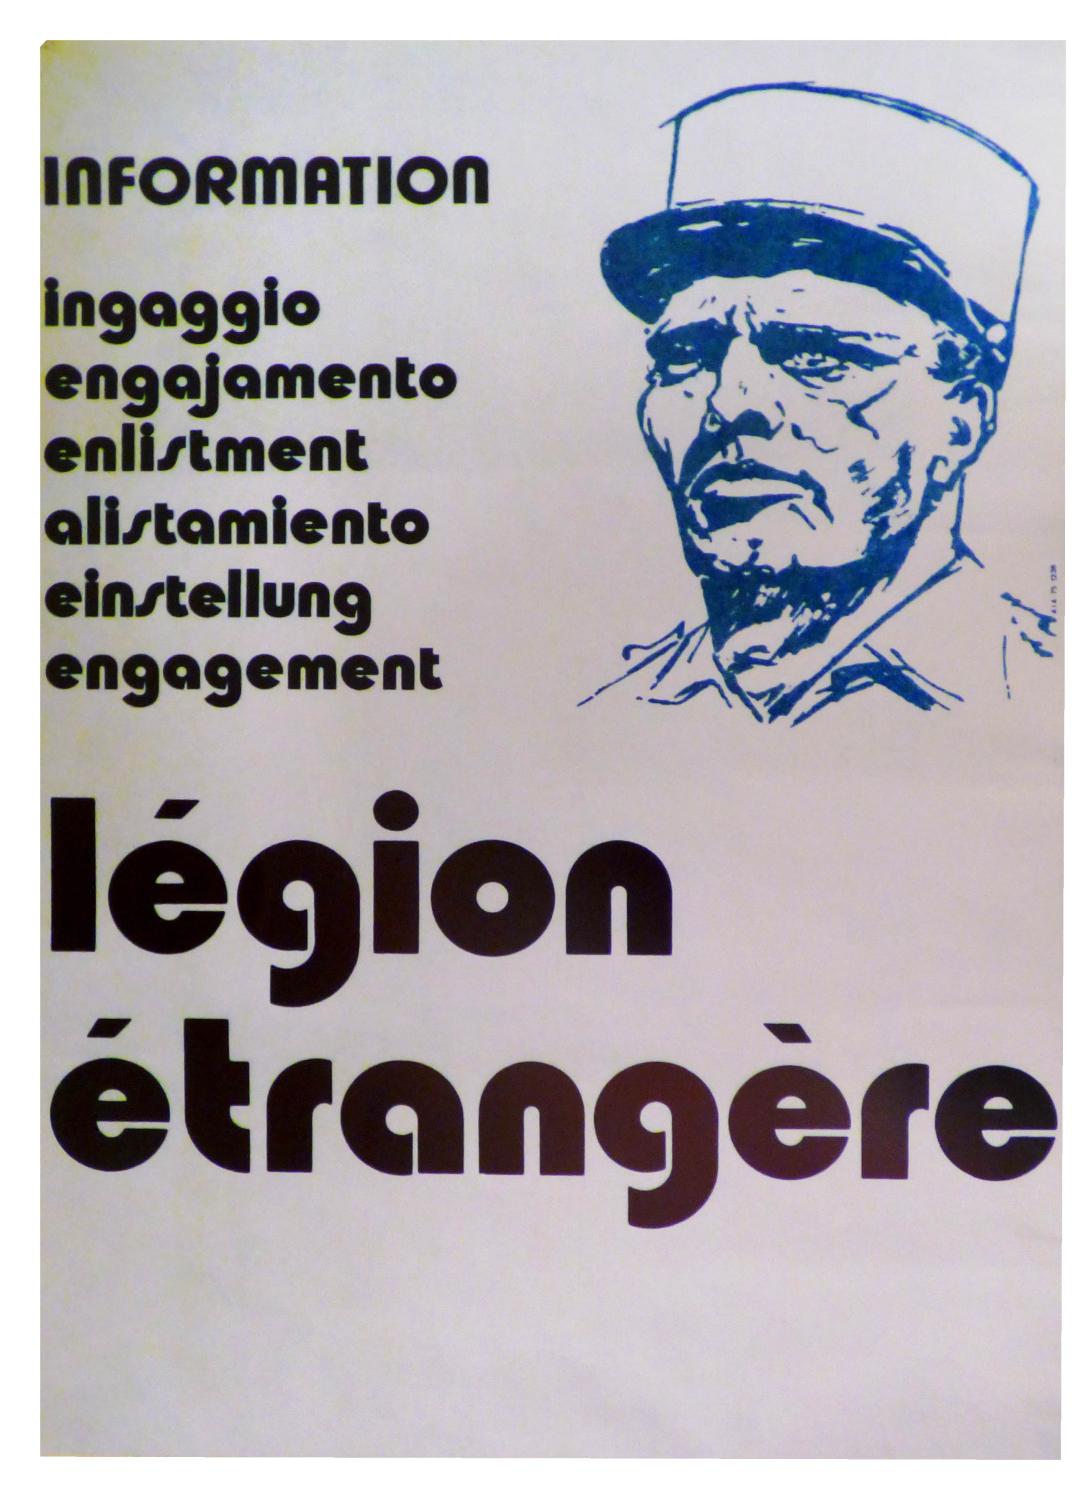 Affiche Légion étrangère "Information engagement"